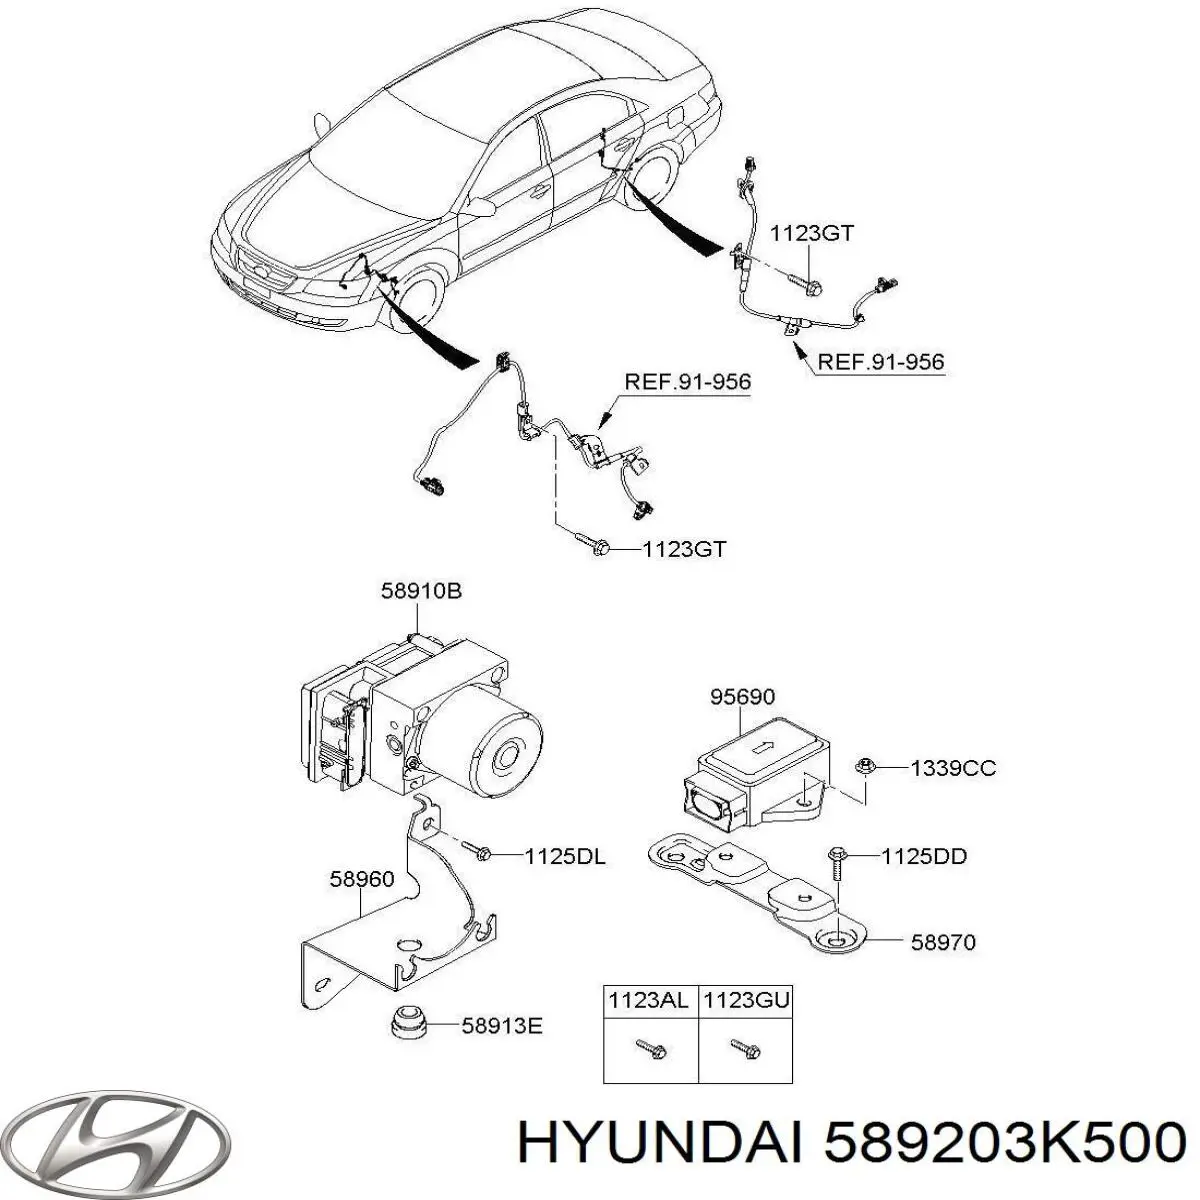 Блок управления АБС (ABS) гидравлический на Hyundai Sonata NF